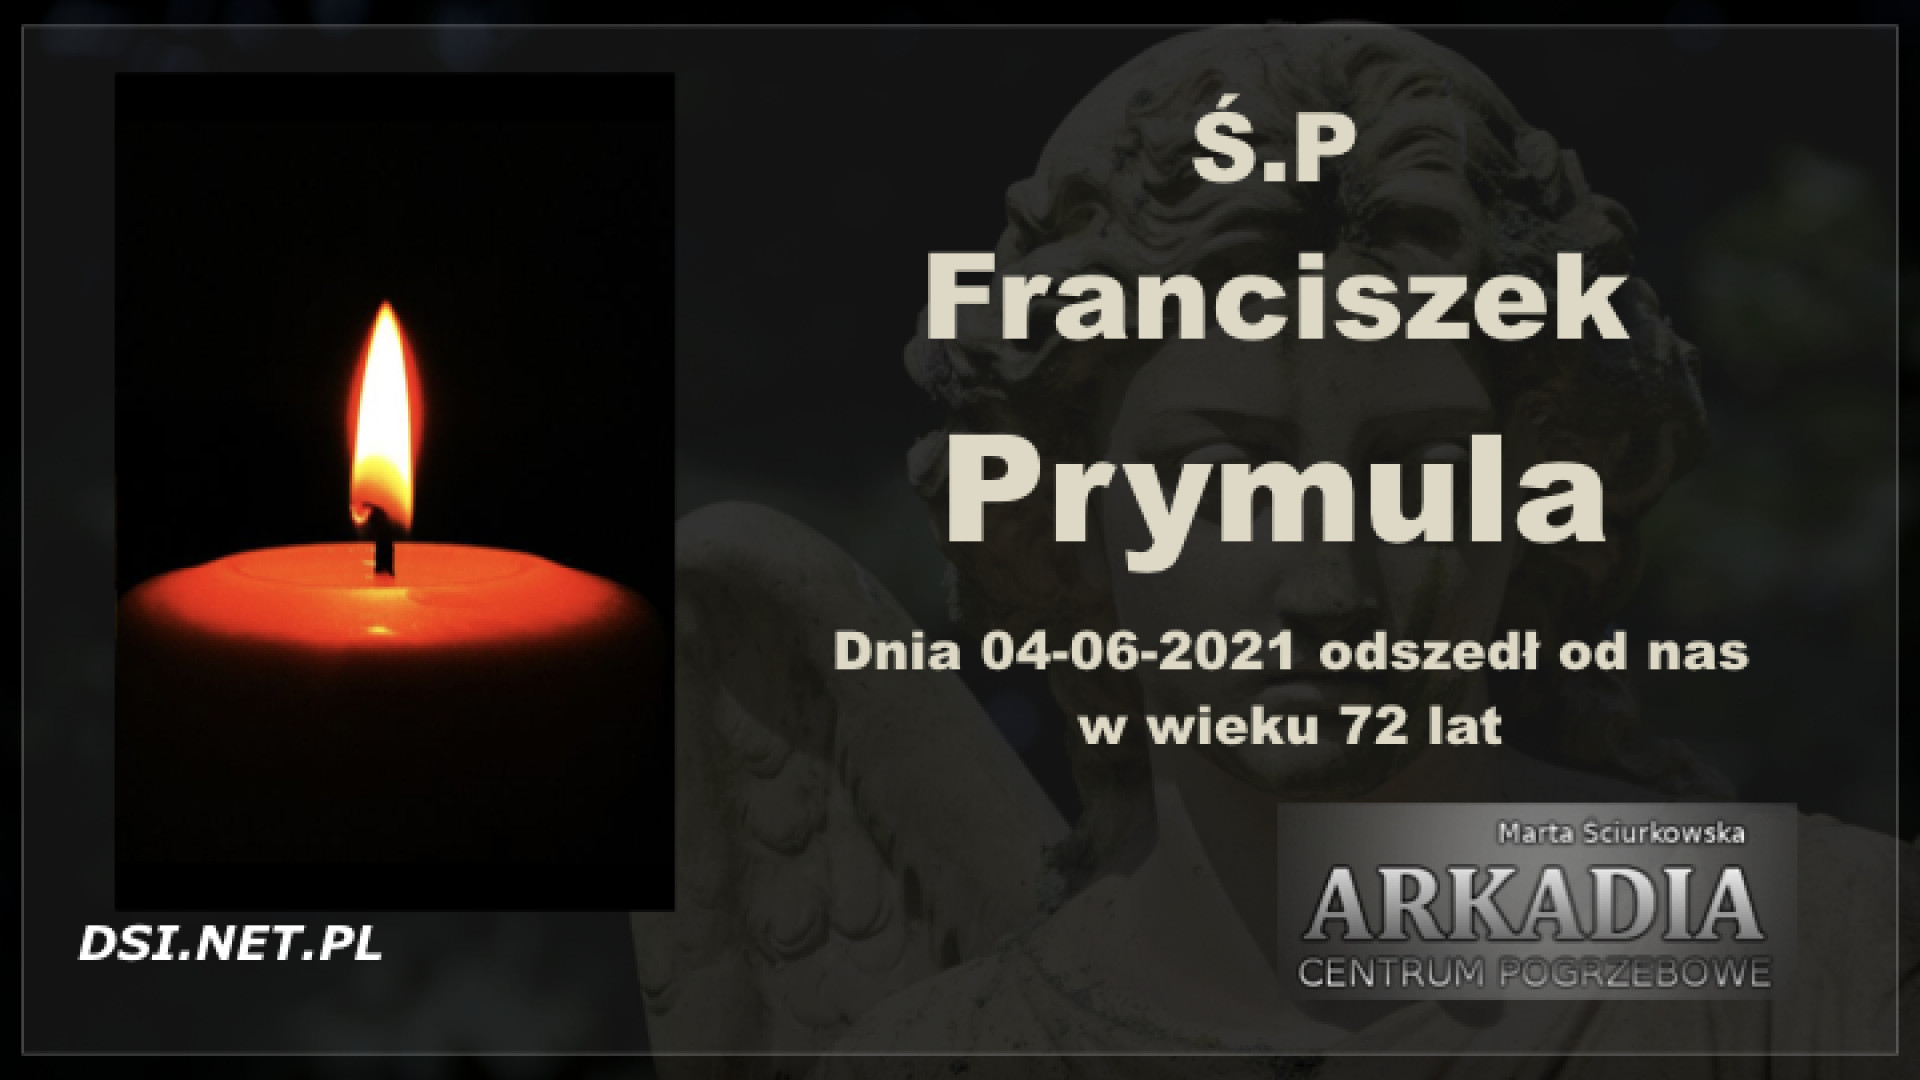 Ś.P. Franciszek Prymula